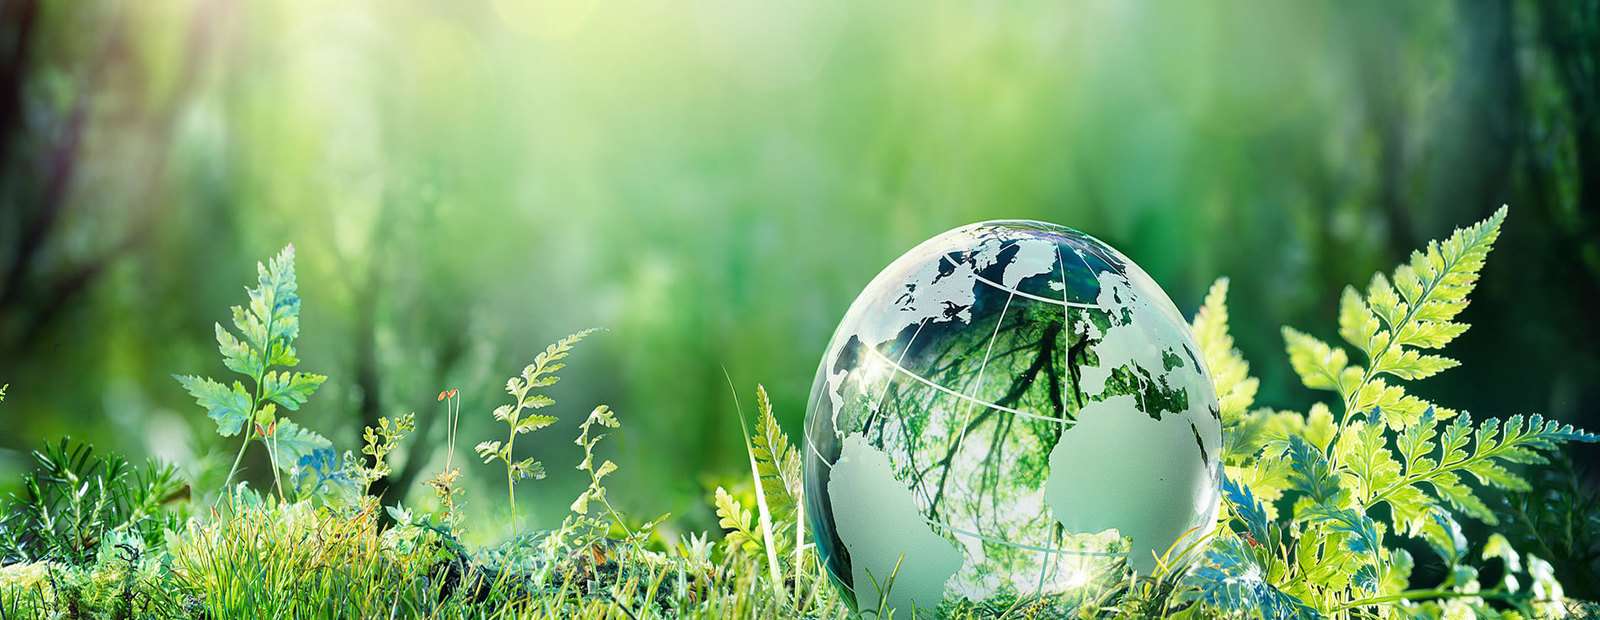 Как сохранить окружающую среду: правила жизни социально ответственного человека | GQ Россия